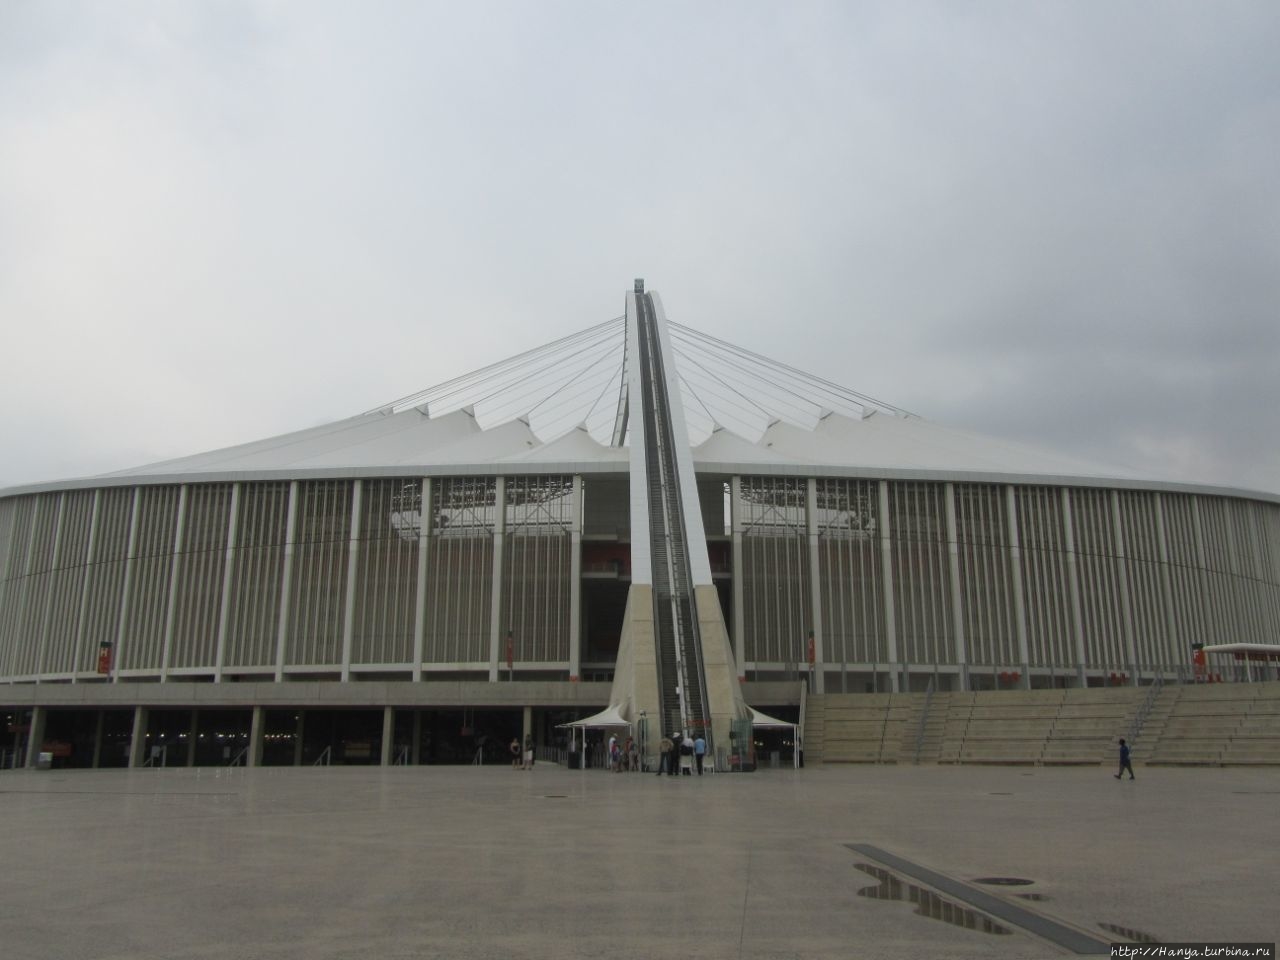 Стадион Мозес Мабида Дурбан, ЮАР